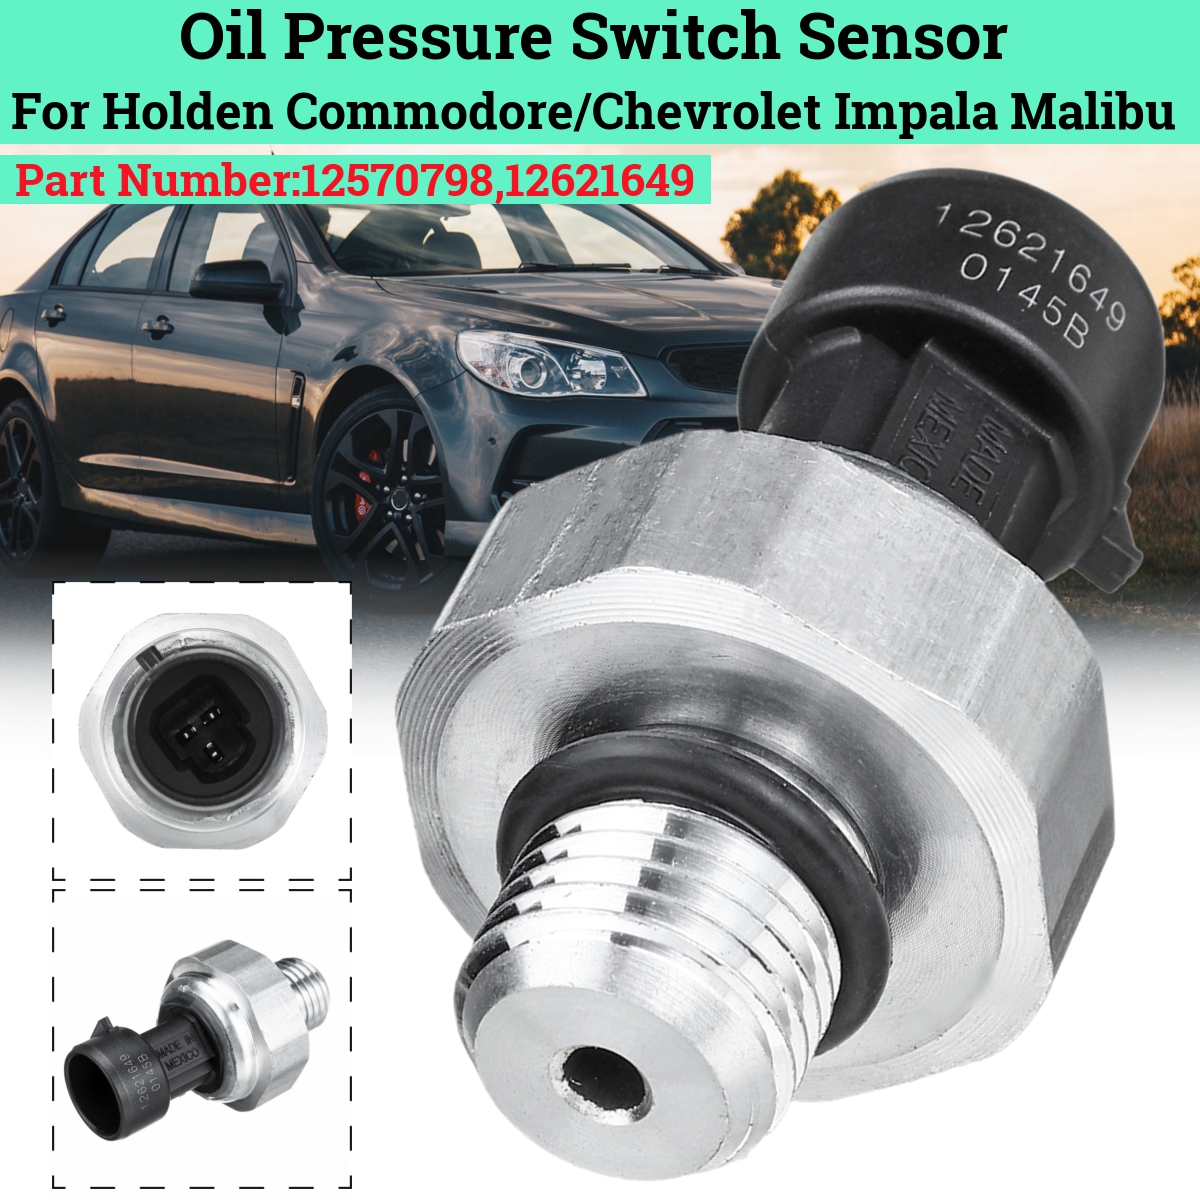 Oil Pressure Switch Sensor For Holden Commodore/Chevrolet Impala Malibu